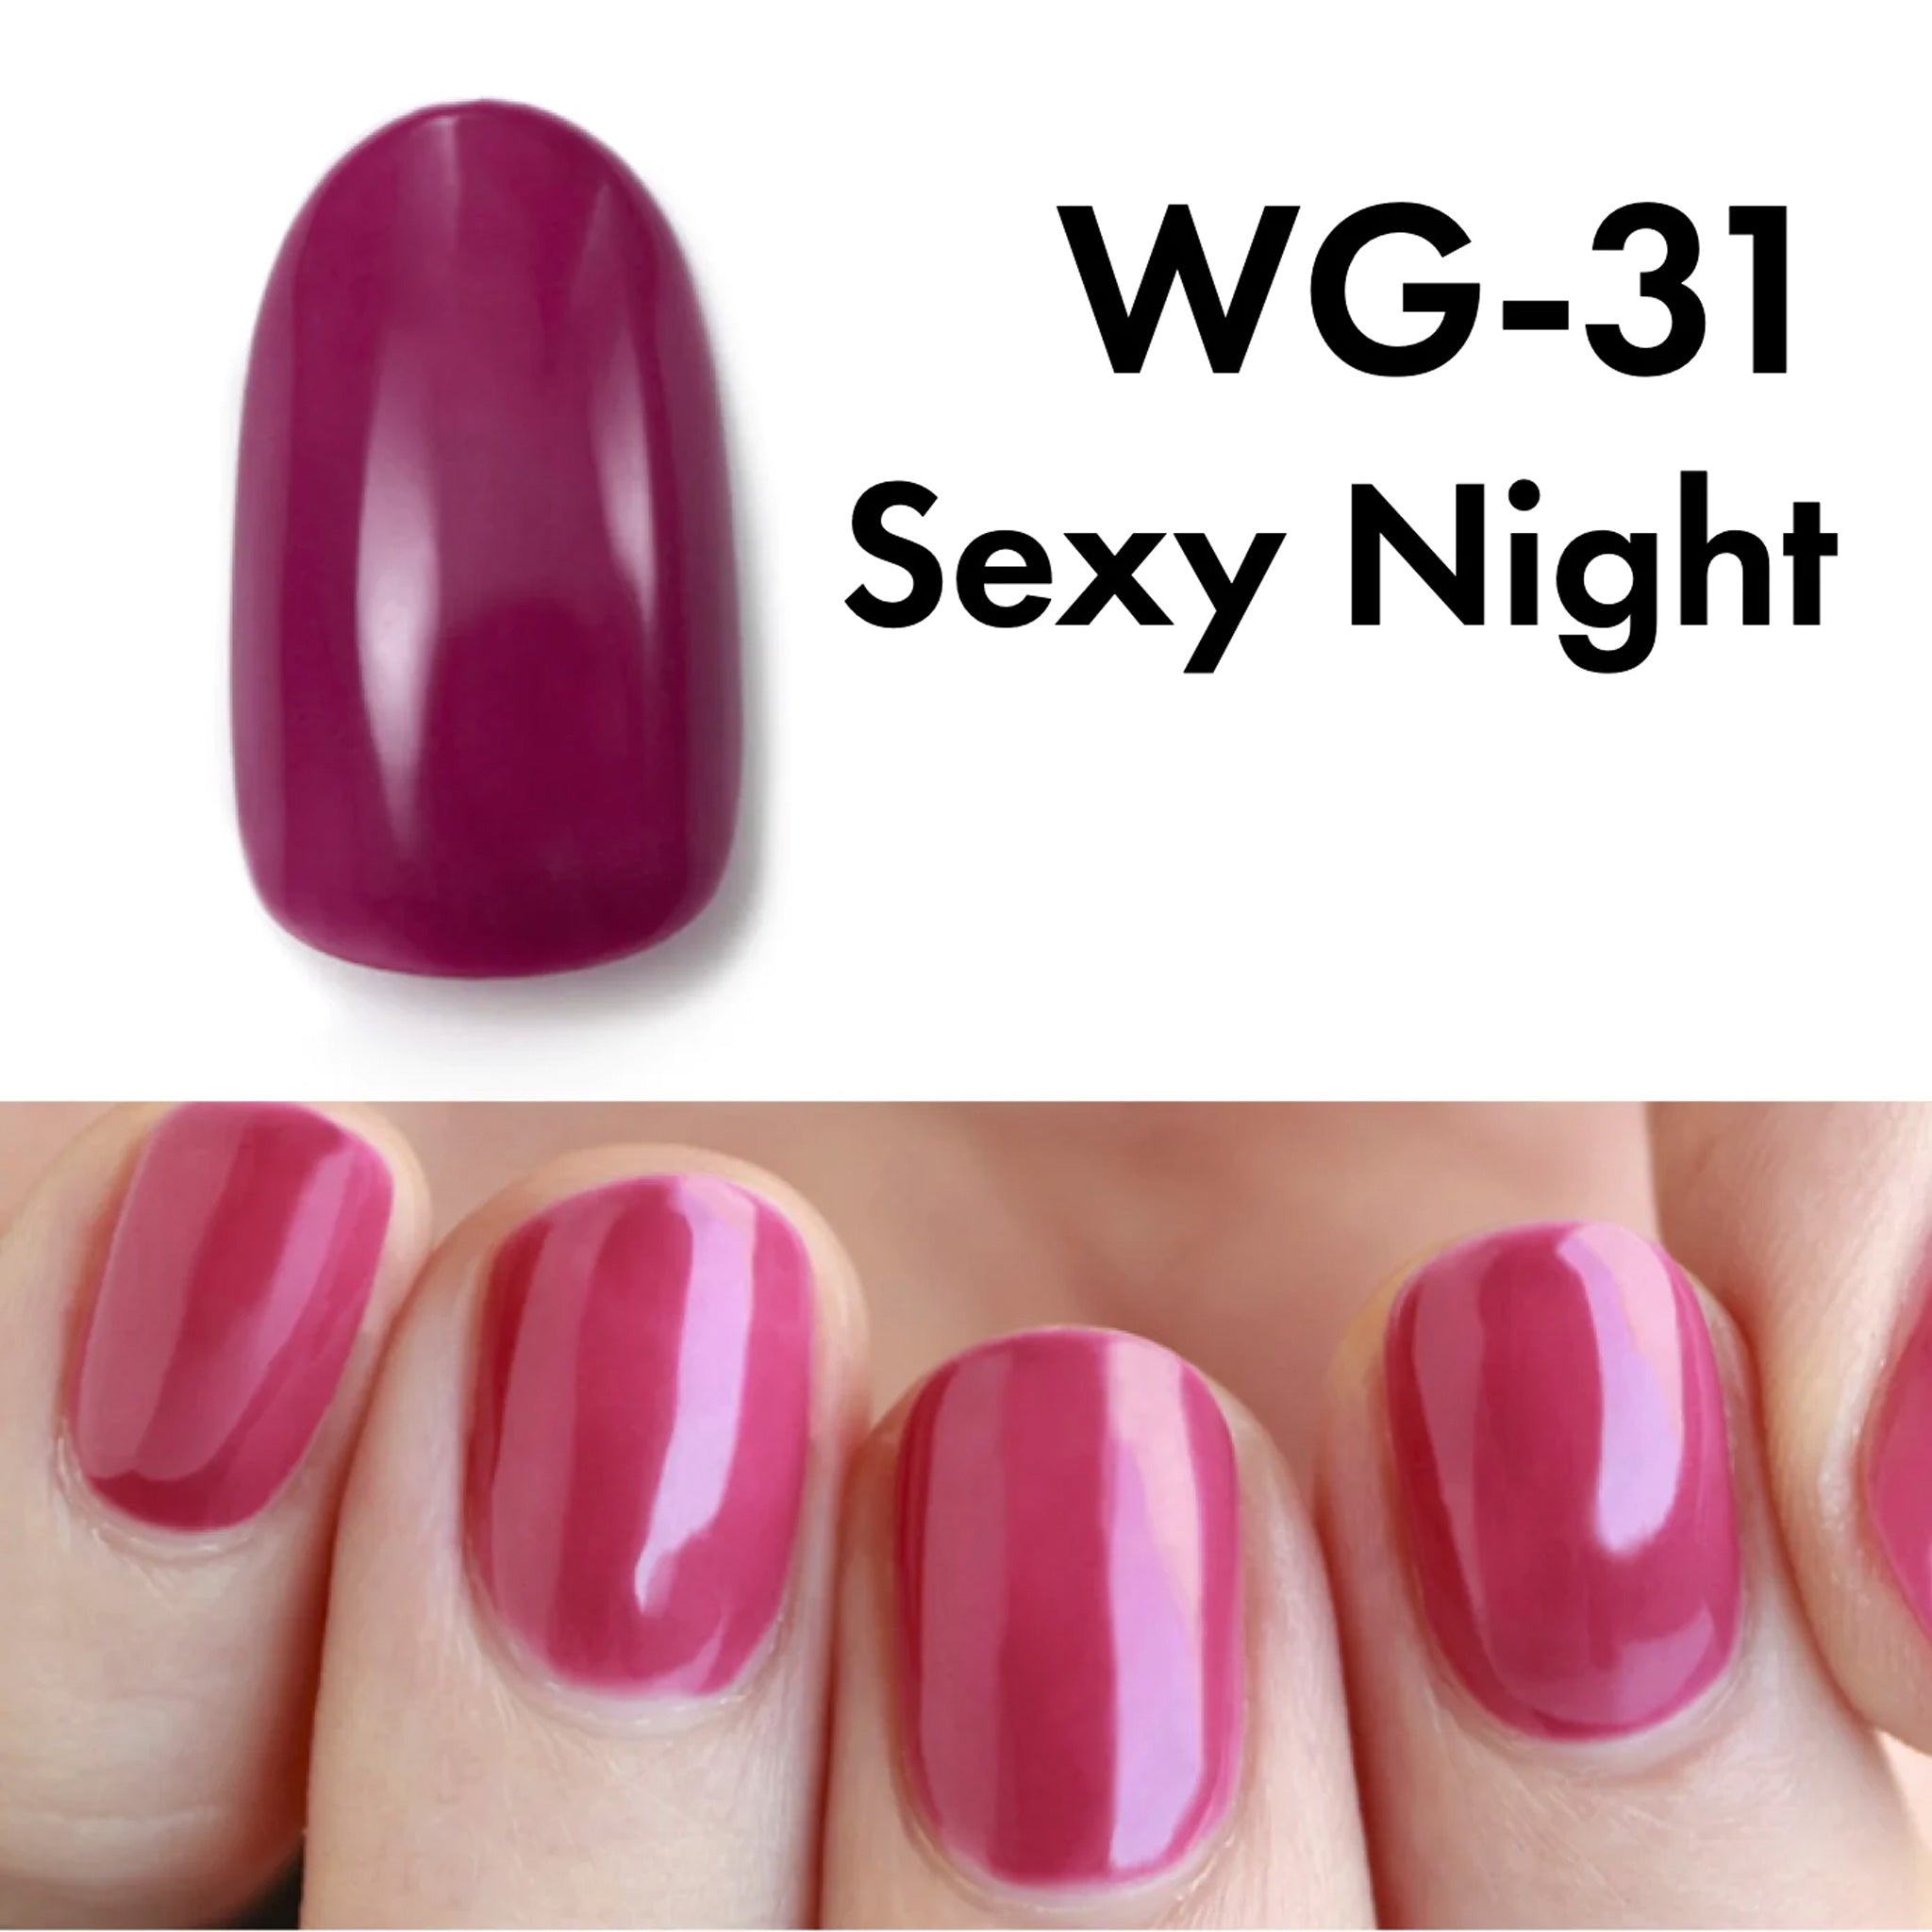 HOMEI Weekly Gel Sexy Night WG-31